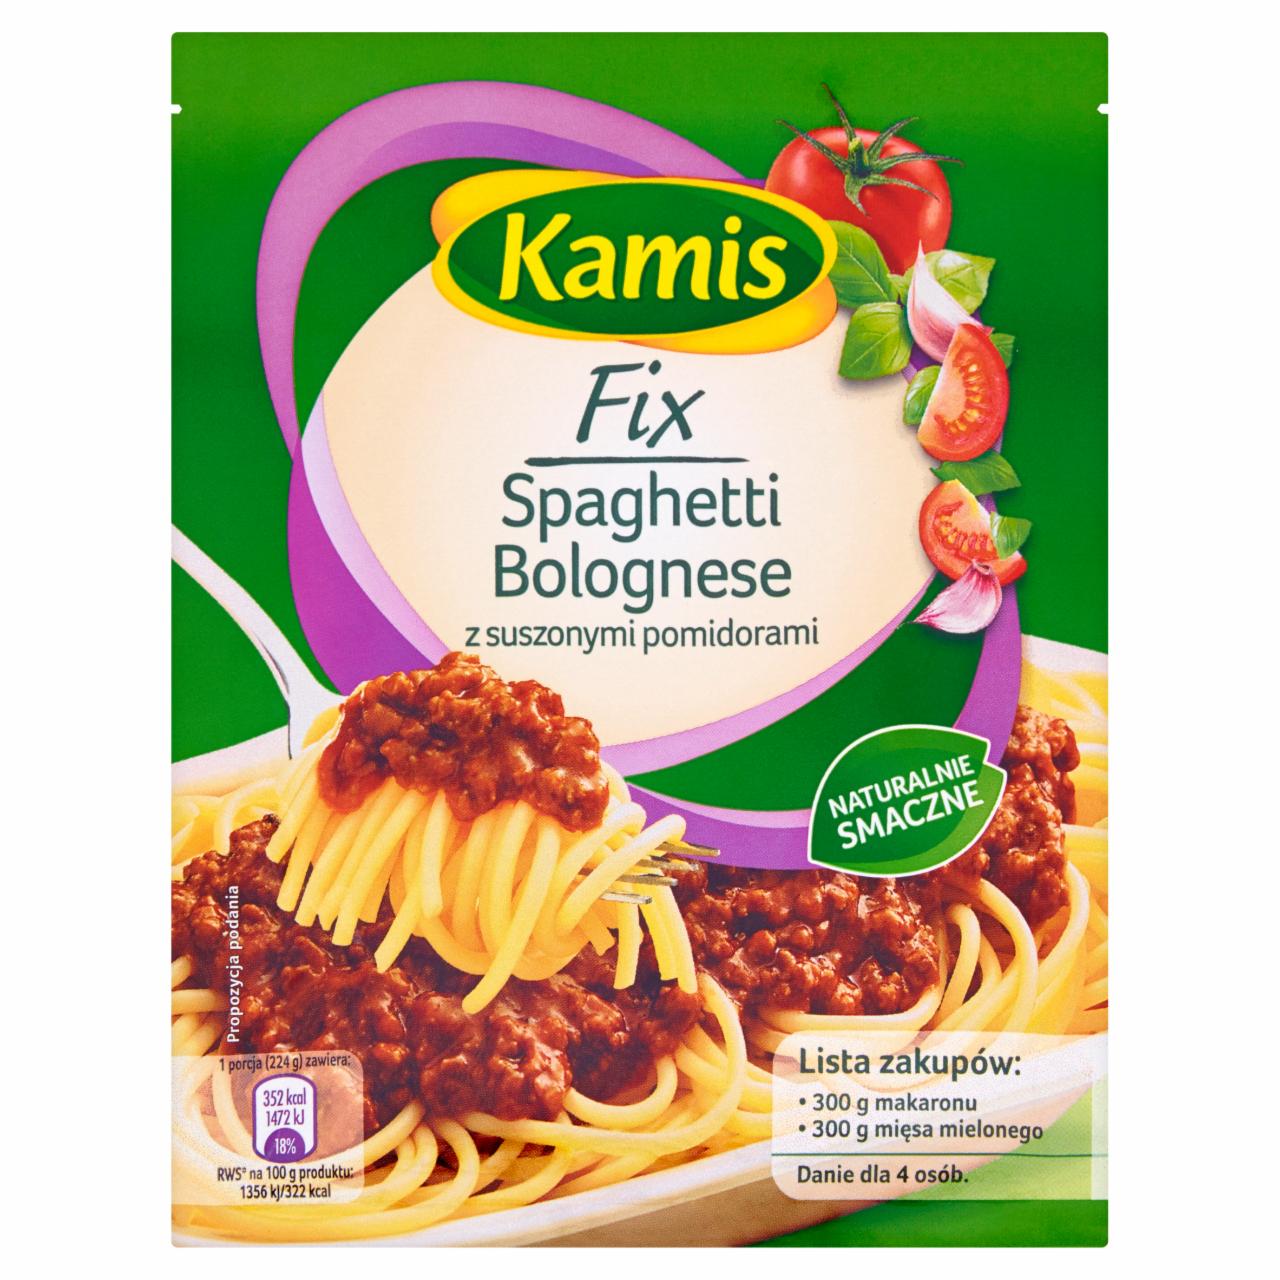 Zdjęcia - Kamis Fix Spaghetti Bolognese z suszonymi pomidorami 45 g